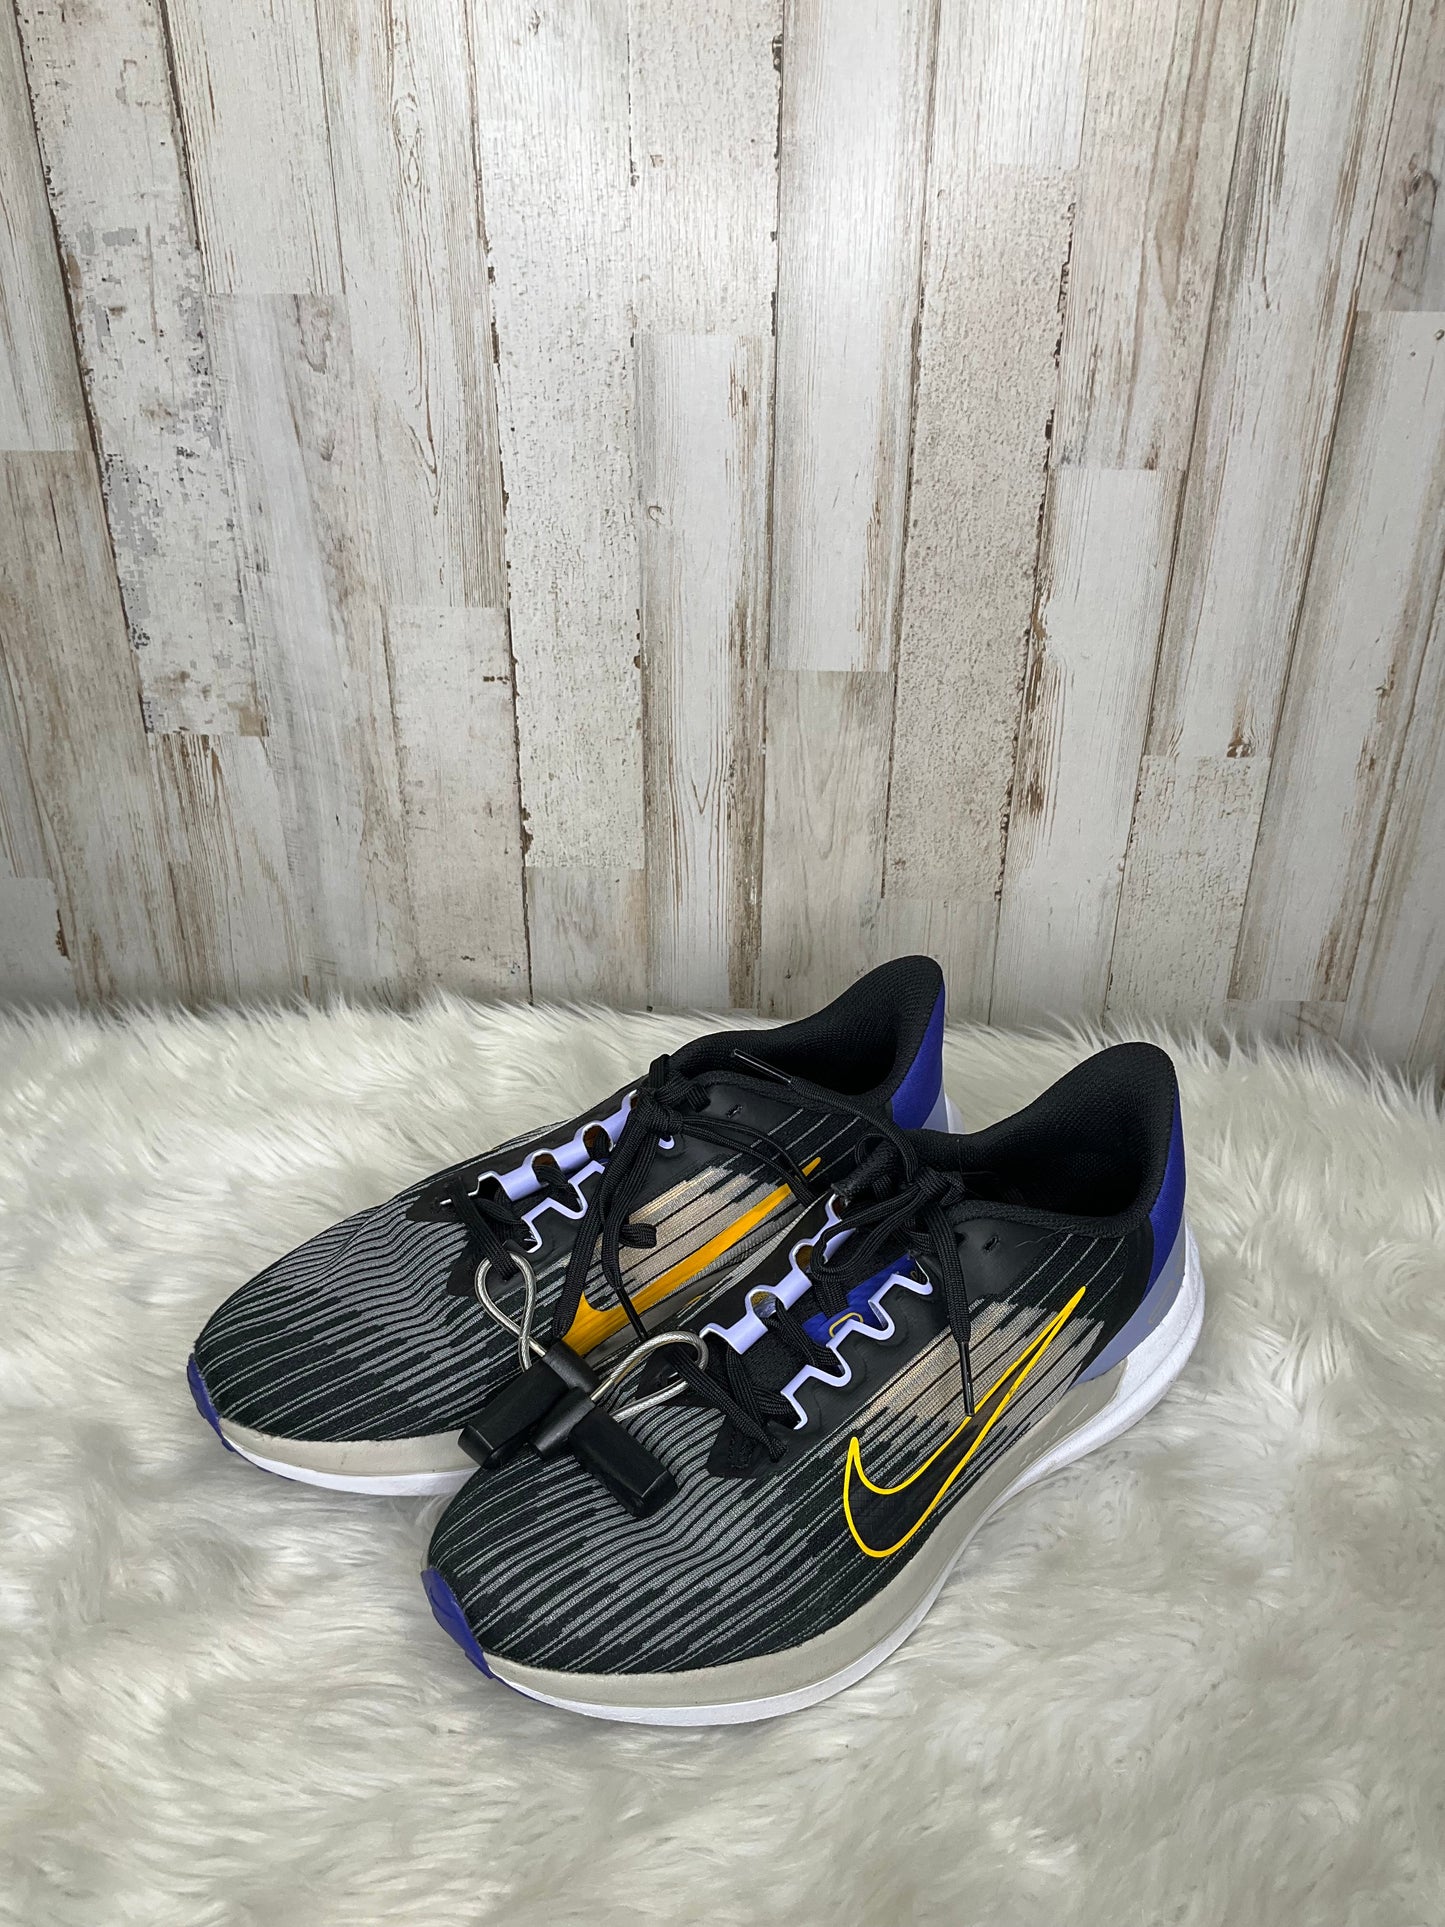 Blue Shoes Athletic Nike, Size 9.5